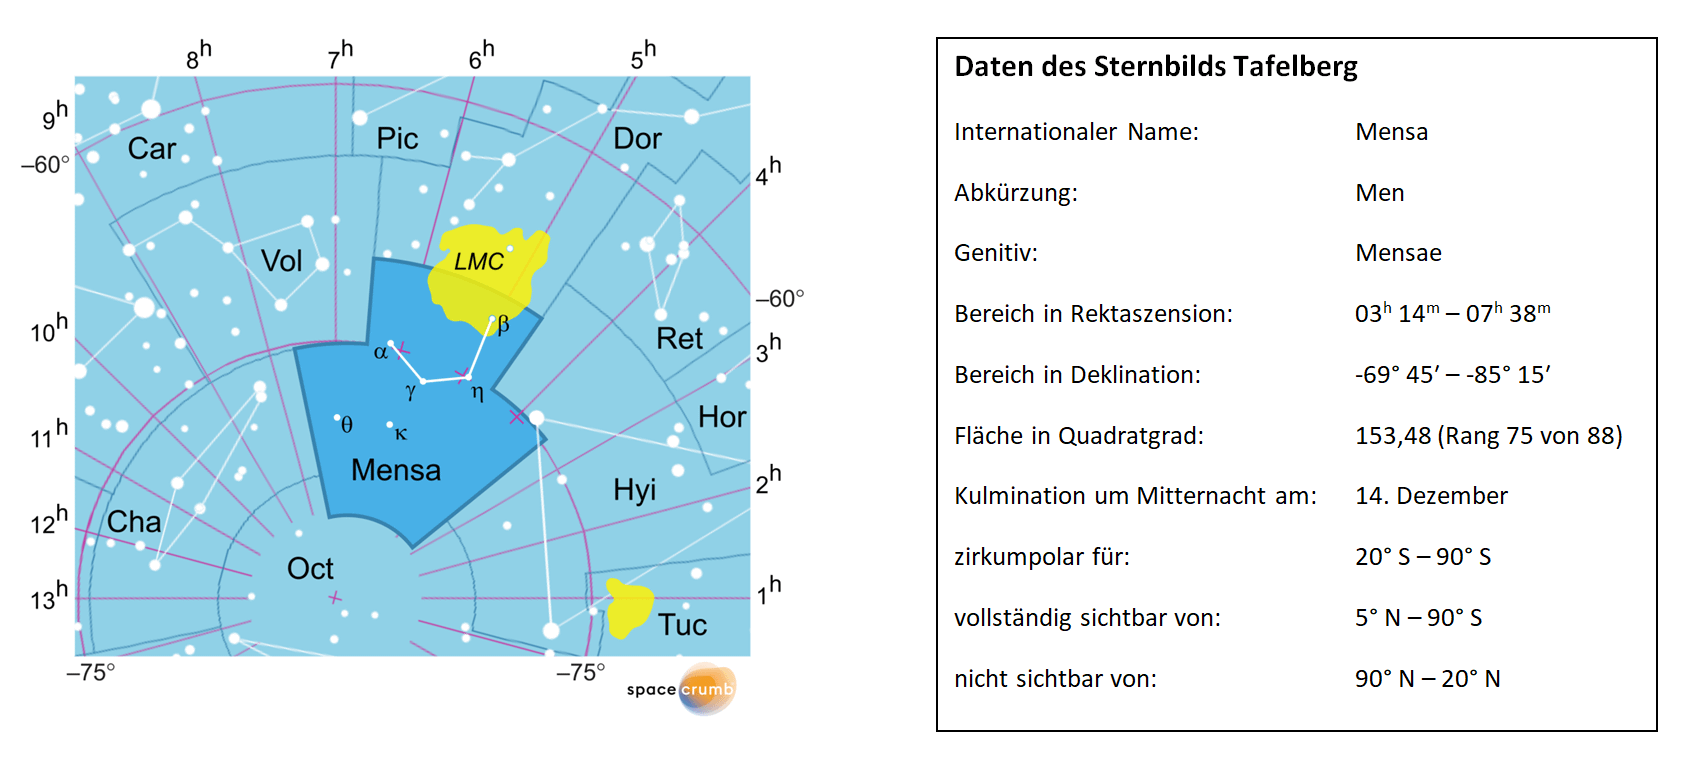 Links zeigt eine mit Koordinaten versehene Karte eines Himmelsausschnitts weiße Sterne auf hellblauem Hintergrund. Die Fläche, die das Sternbild Tafelberg einnimmt, ist dunkelblau hervorgehoben. Eine Tabelle rechts gibt wichtige Daten des Sternbilds Tafelberg an.